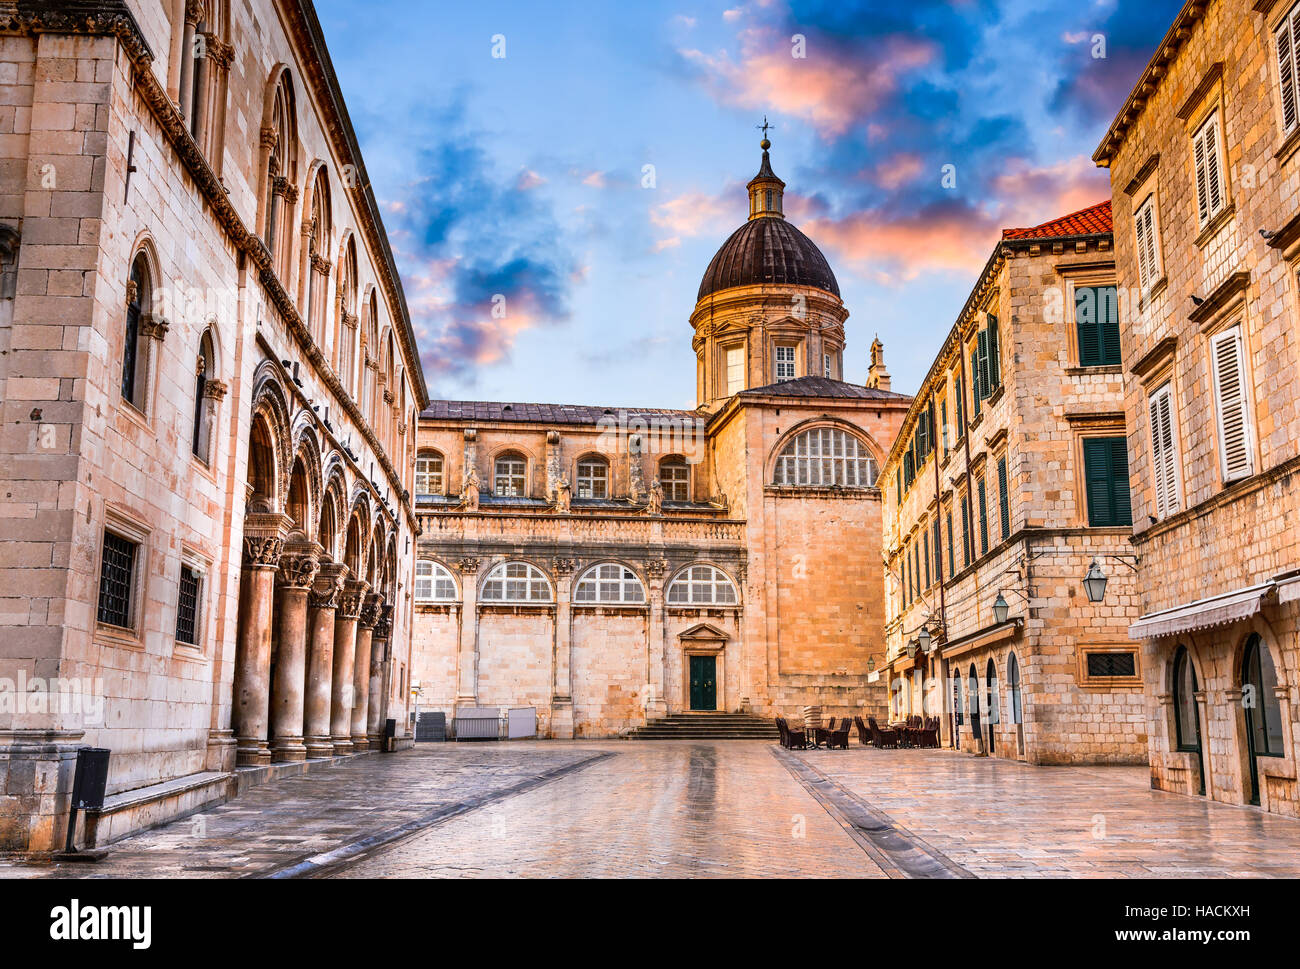 Dubrovnik, Croatie. Cathédrale de l'Assomption dans la vieille ville de Raguse l'une des principales destinations touristiques de la Méditerranée. Banque D'Images